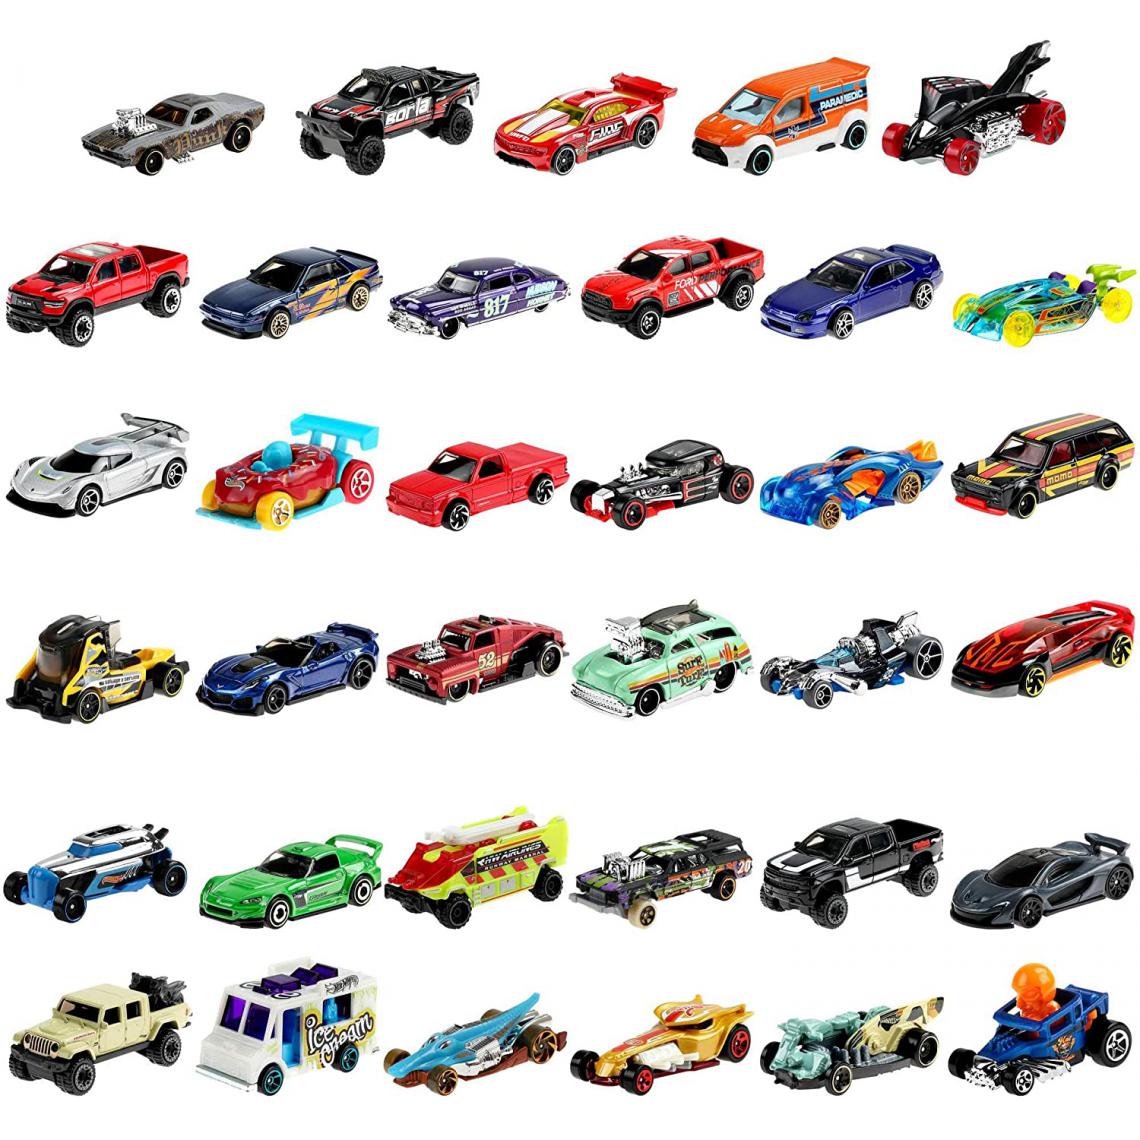 Hot Wheels - Coffret 36 véhicules pour enfant de petites voitures miniatures - Voiture de collection miniature